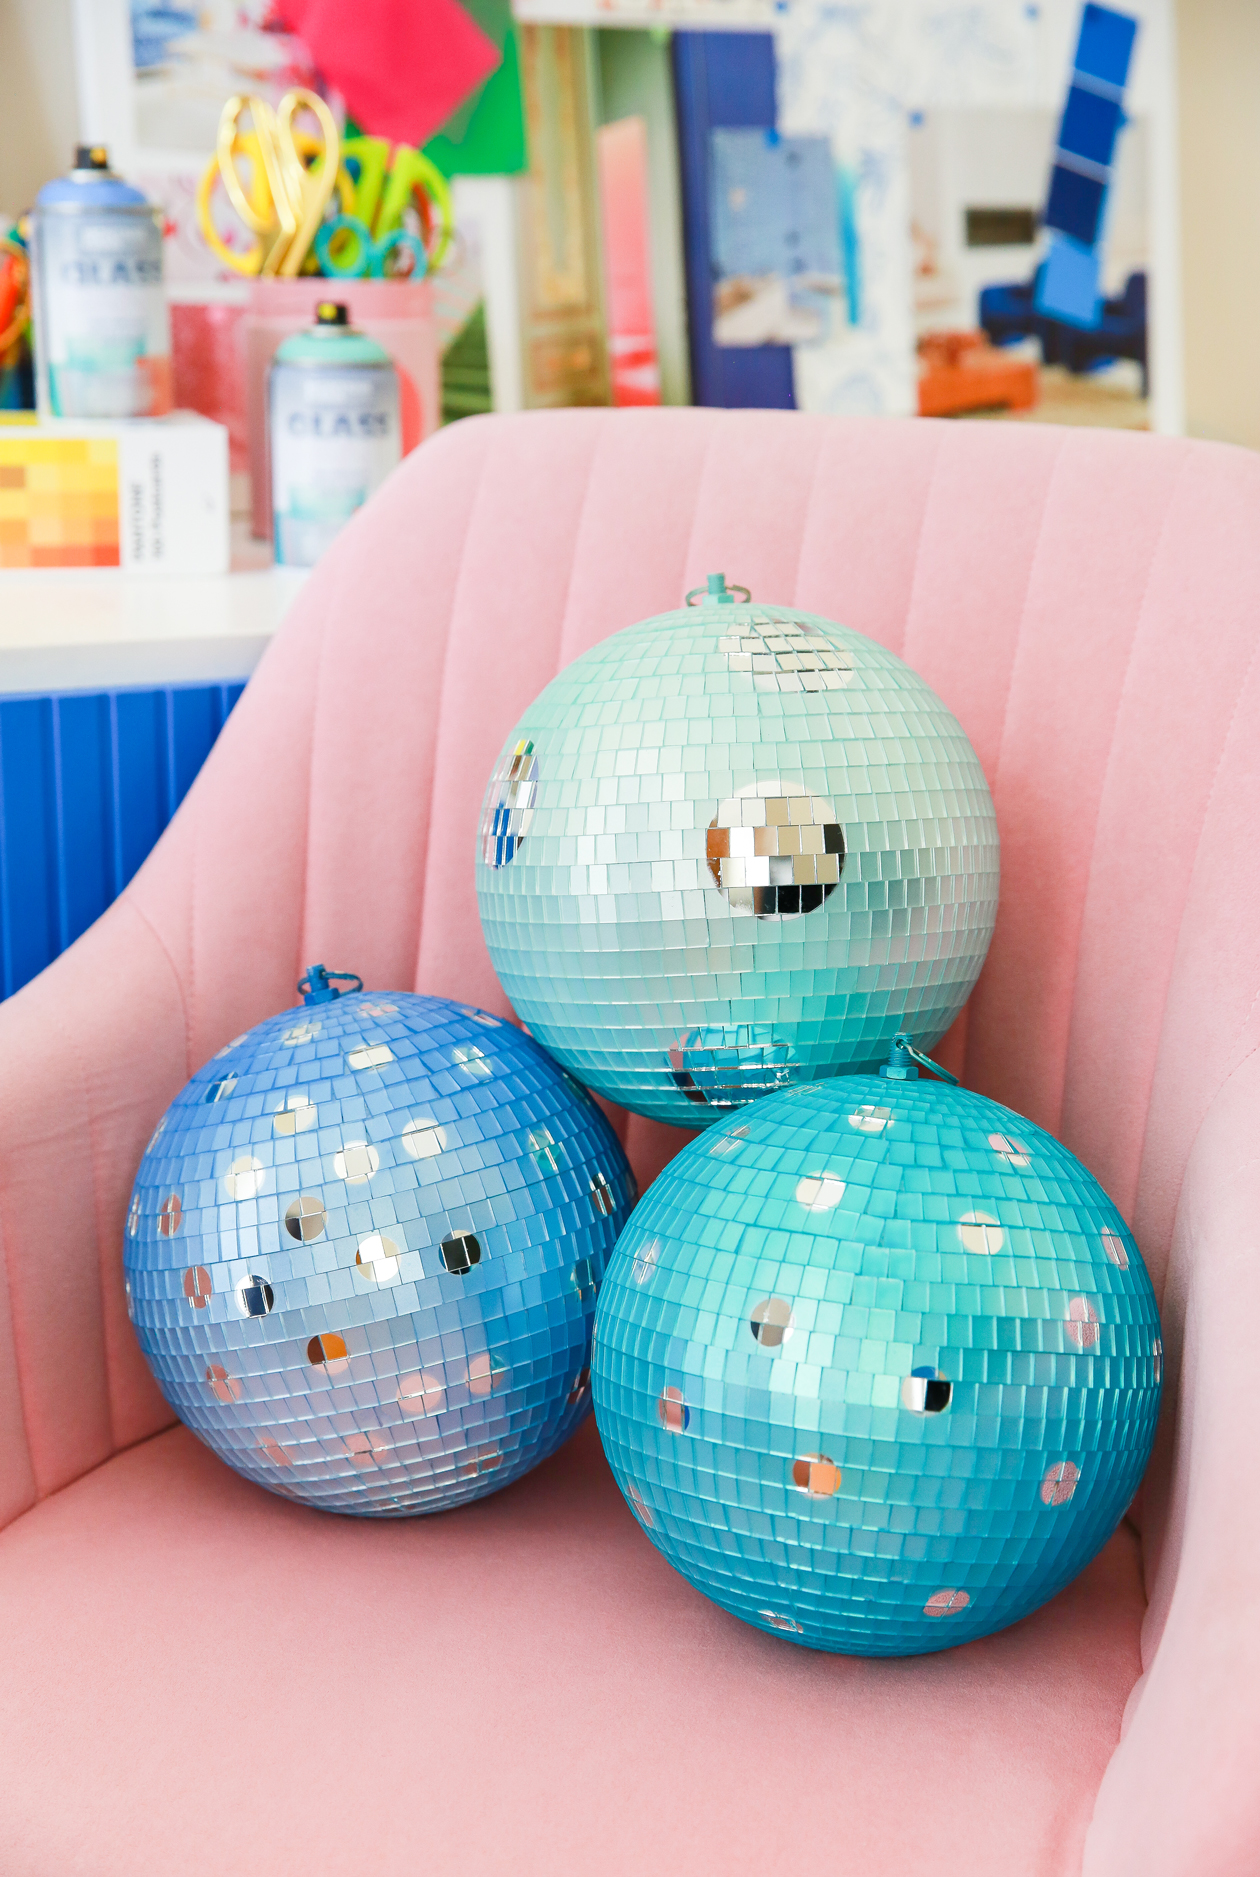 Pintar bolas de discoteca pode ser uma forma divertida e criativa de adicionar um toque único a qualquer ambiente.  É fácil transformar qualquer bola de discoteca básica em uma versão colorida.  Aprenda a pintar bolas de discoteca com spray com este DIY fácil!